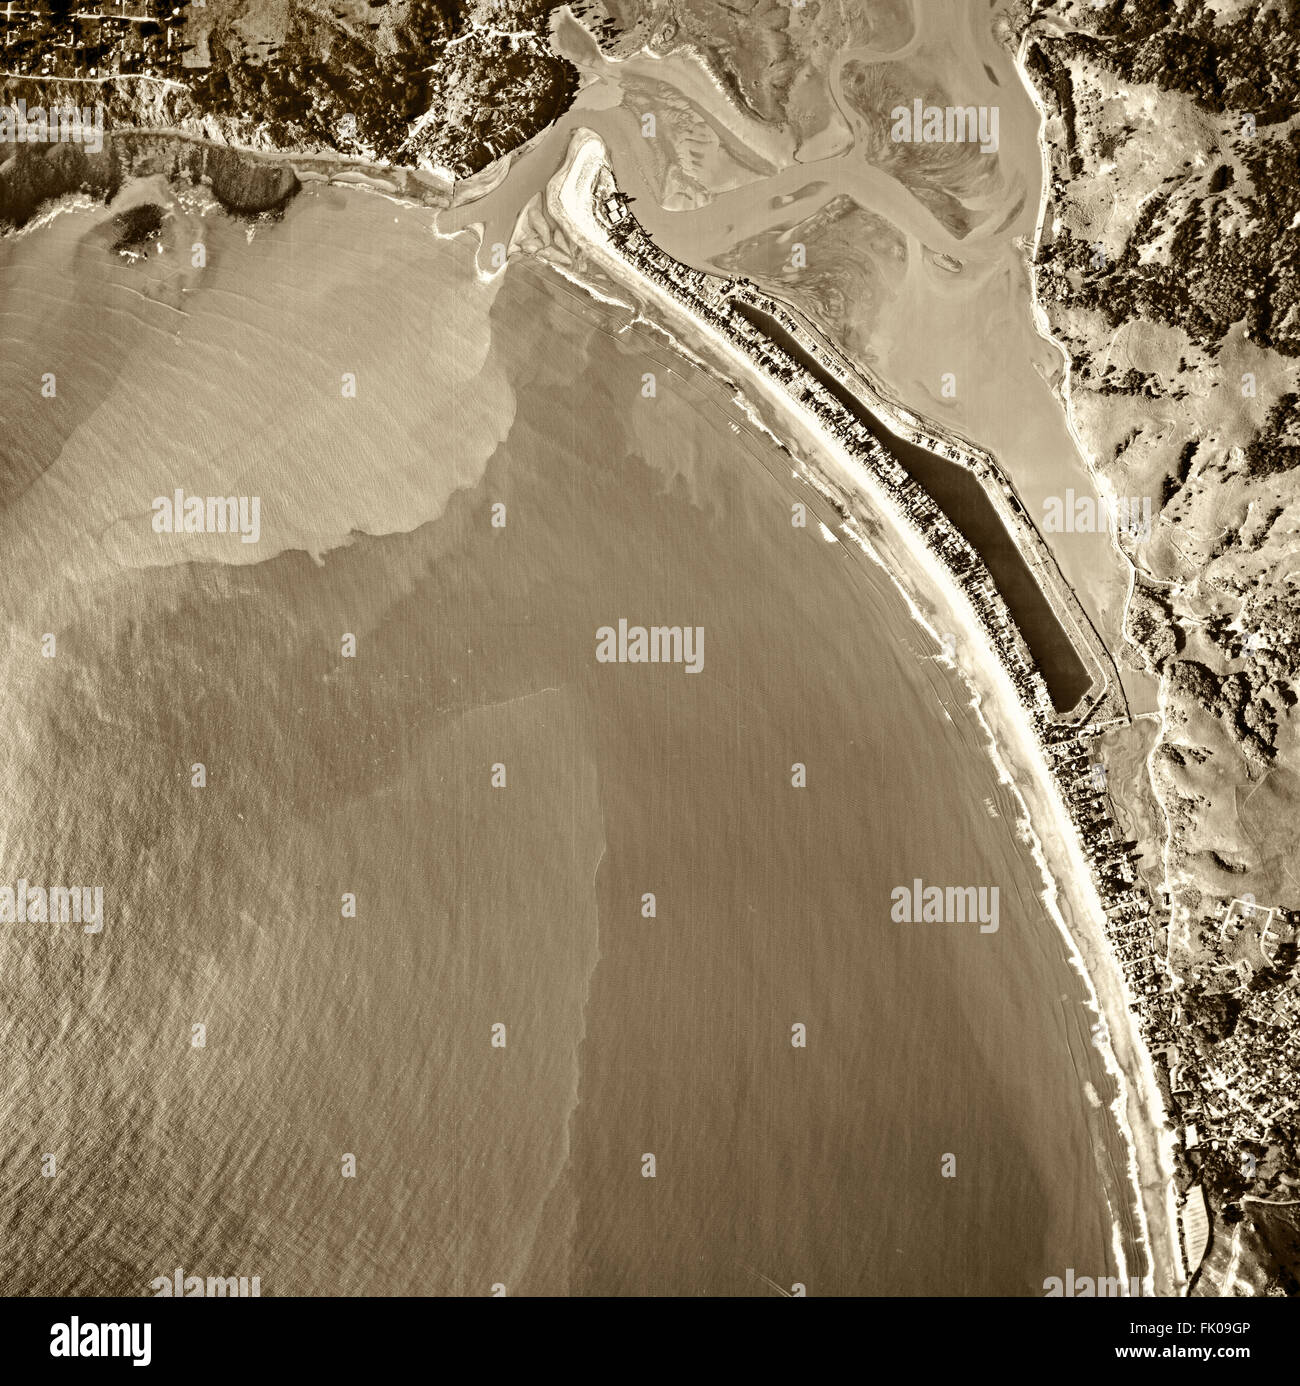 Fotografía aérea histórica de Stinson Beach, Bolinas y la Bahía Bolinas y Bolinas Lagoon, Marin County, California, 1982 Foto de stock